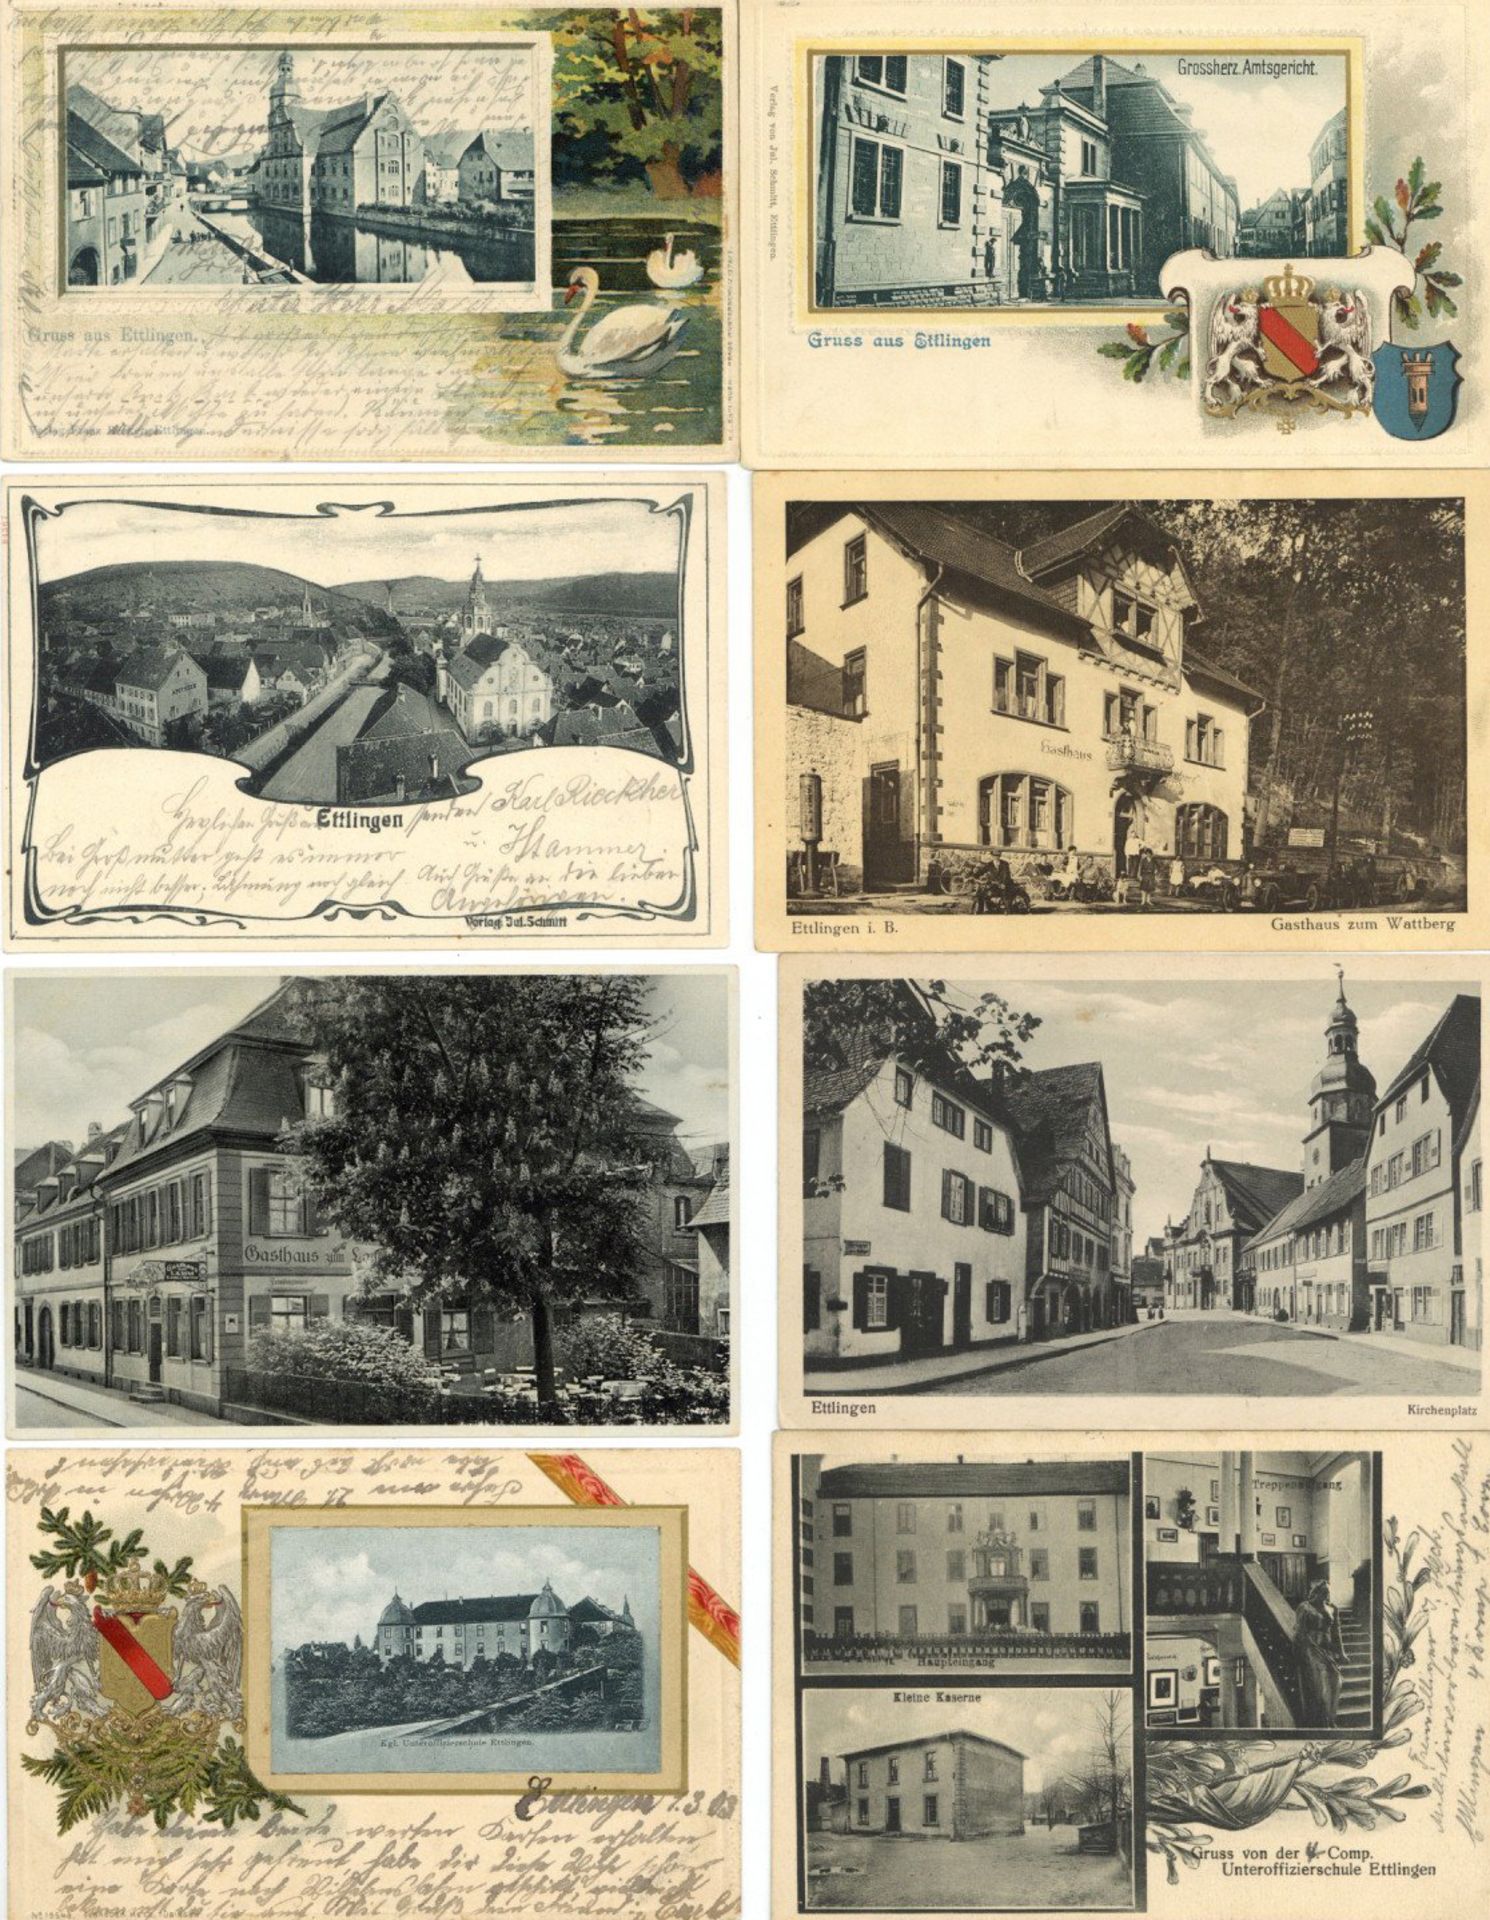 Ettlingen (7505) Partie von circa 1200 Ansichtskarten meist vor 1945, einige sind mehrfach, teils